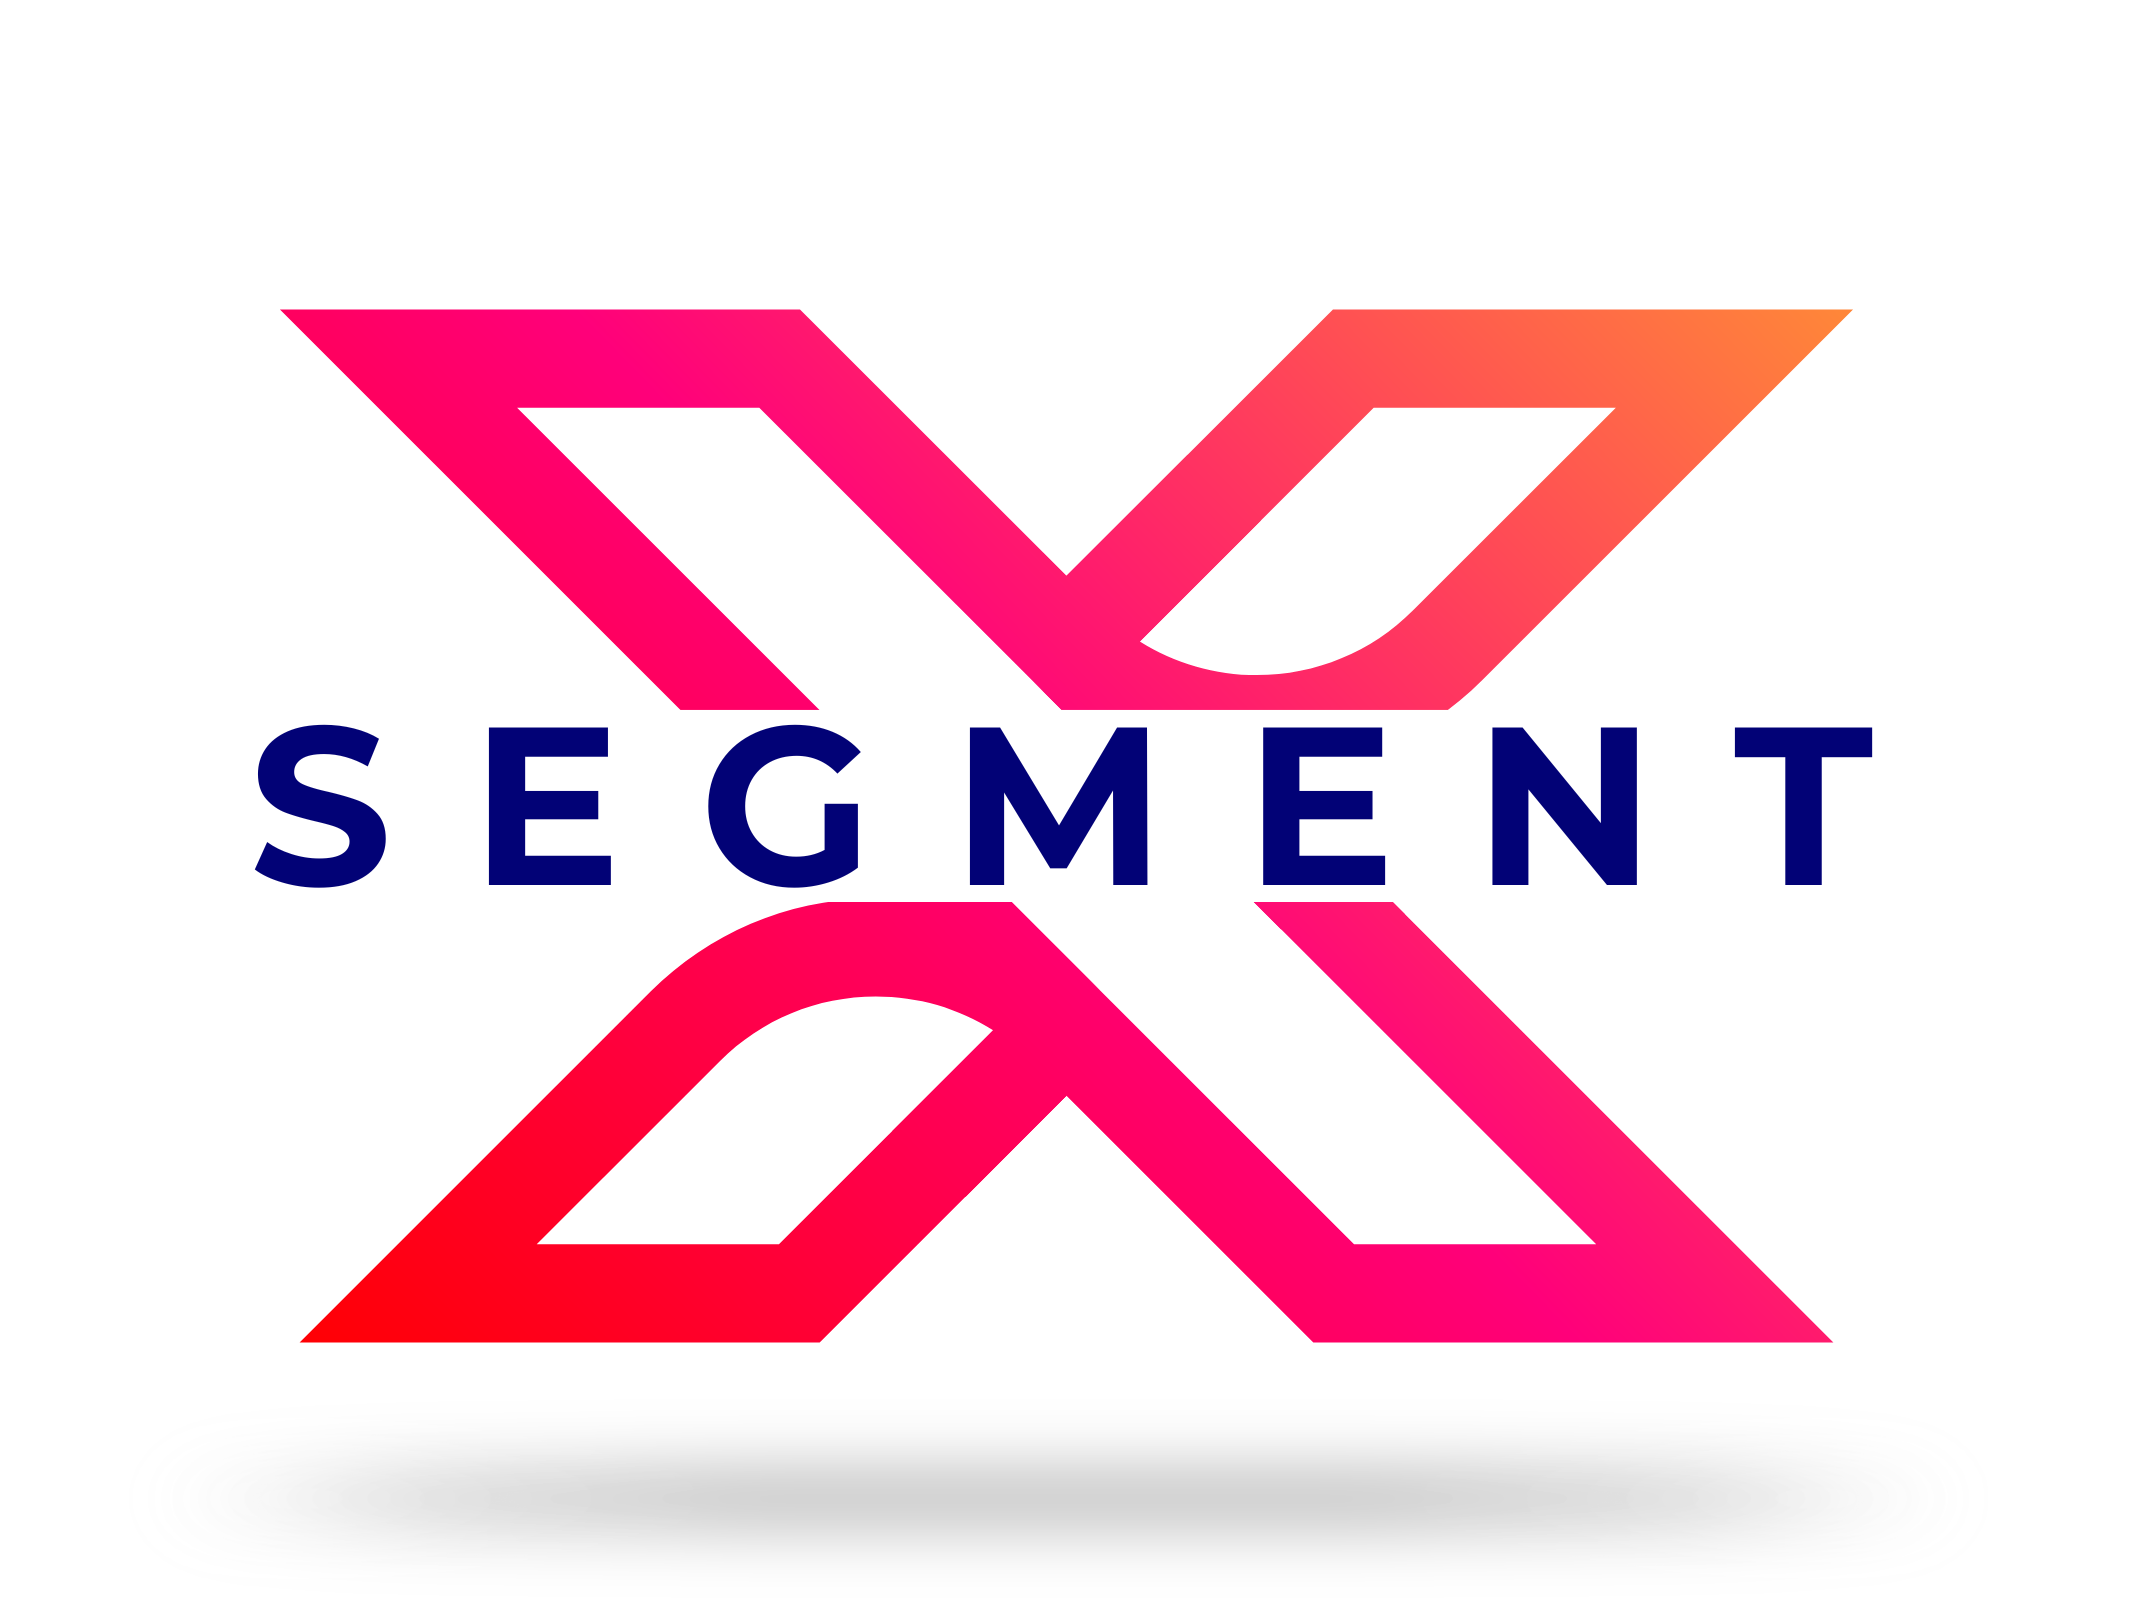 Segment X